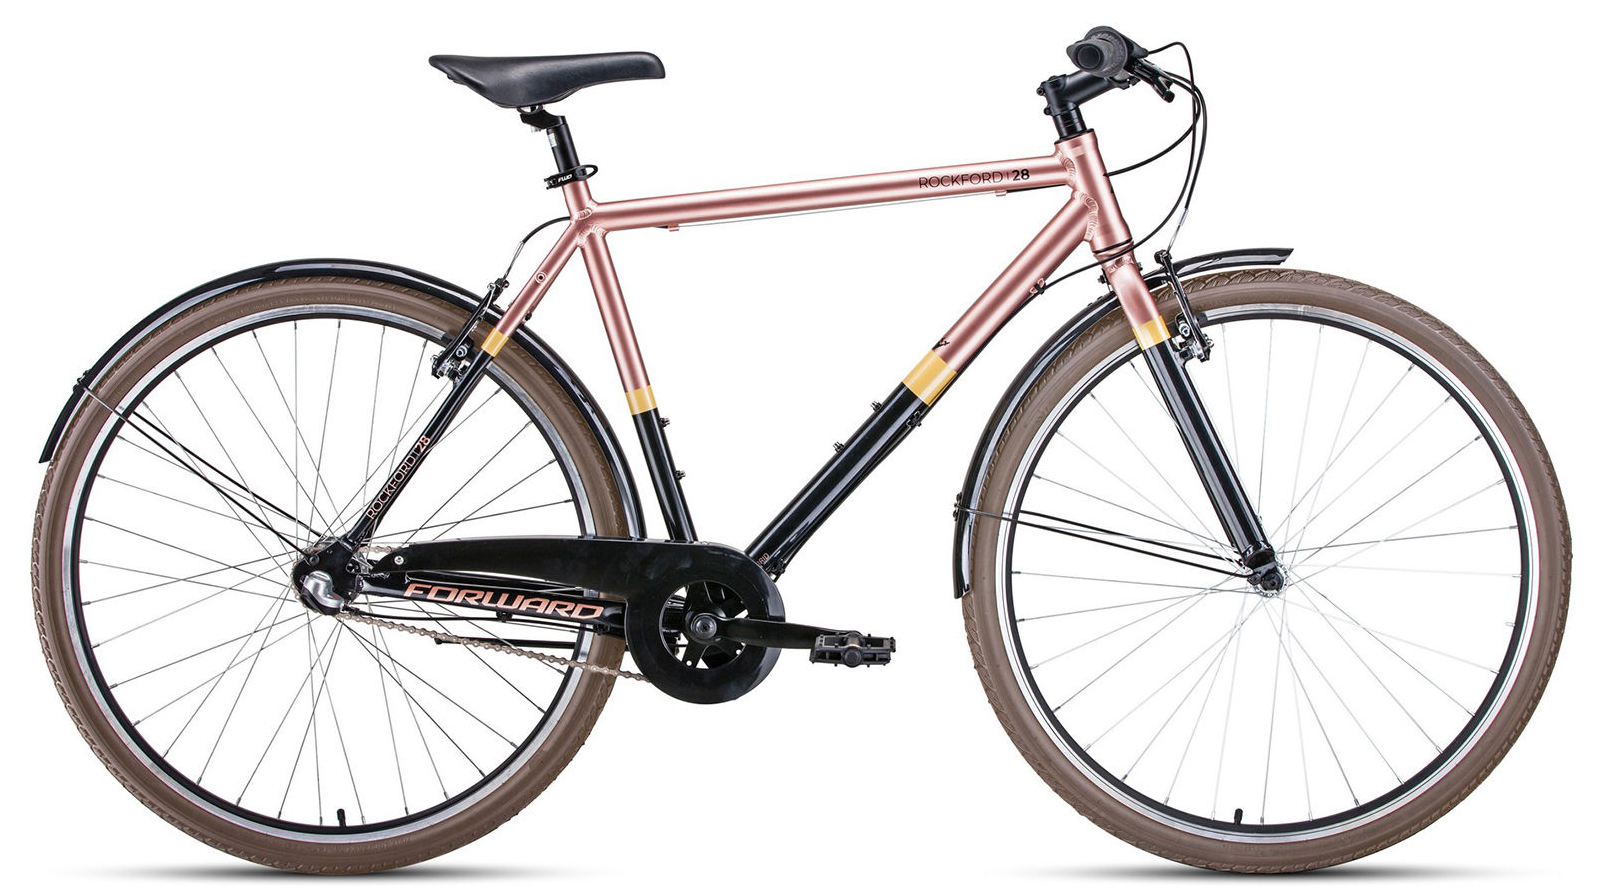  Отзывы о Городском велосипеде Forward Rockford 28 2020